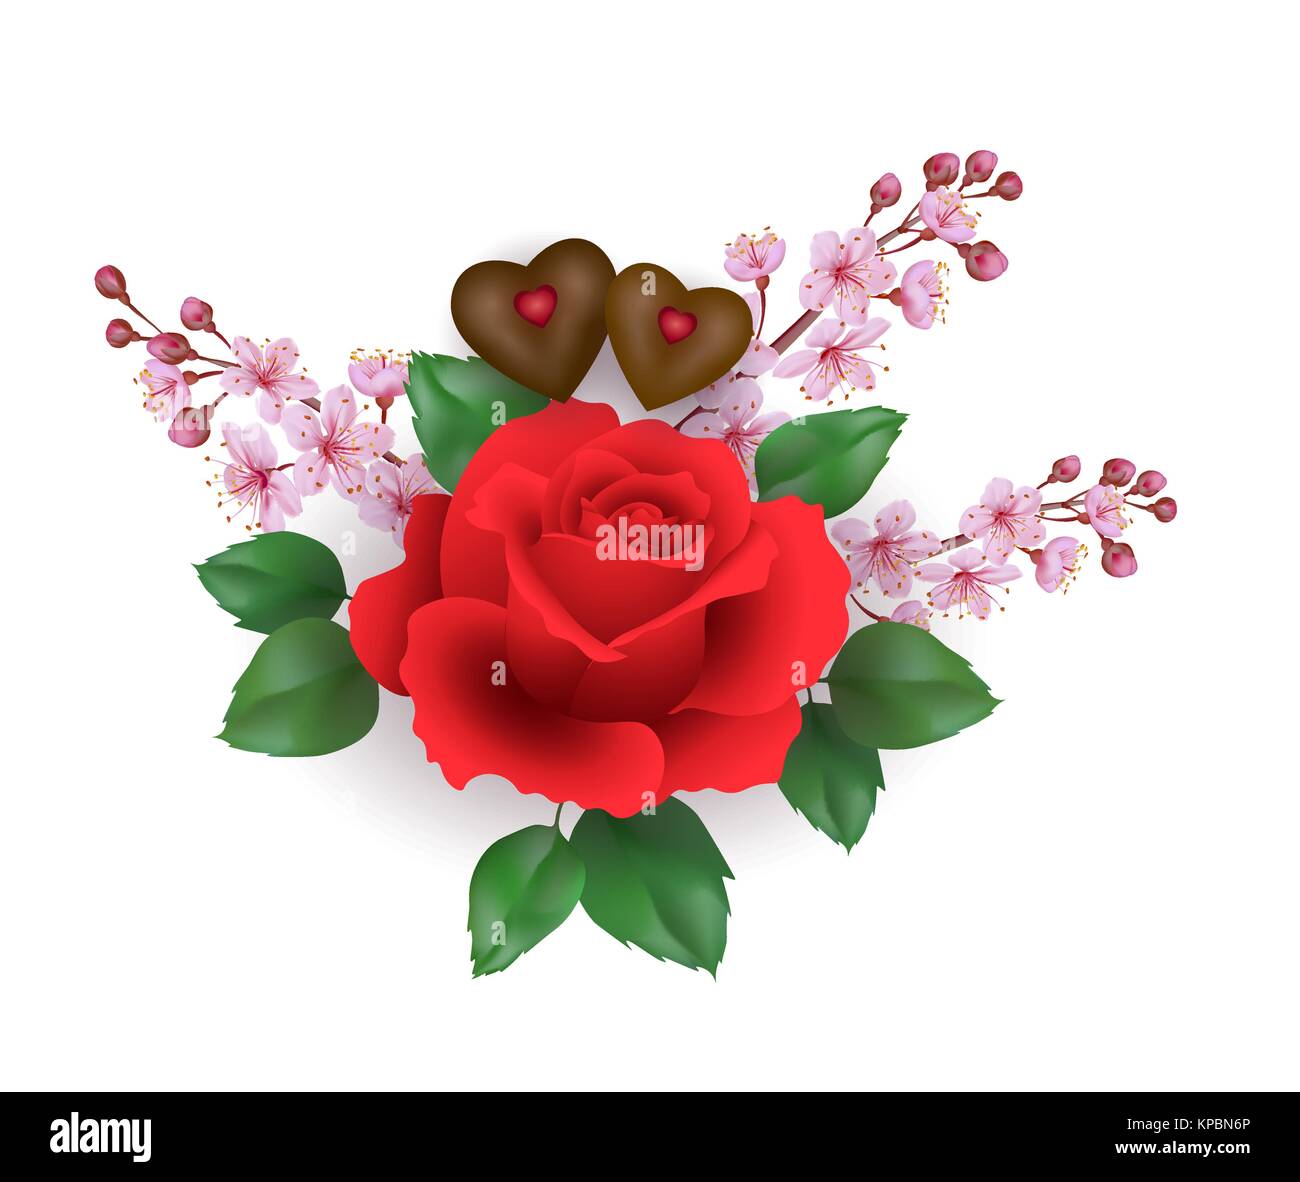 Realistische Valentinstag set red rose Schokolade Blume. Pink Cherry sakura spring blossom Herzform candy romantisches Geschenk Datum vorhanden Liebe. 3D-Vektor illustration Stock Vektor